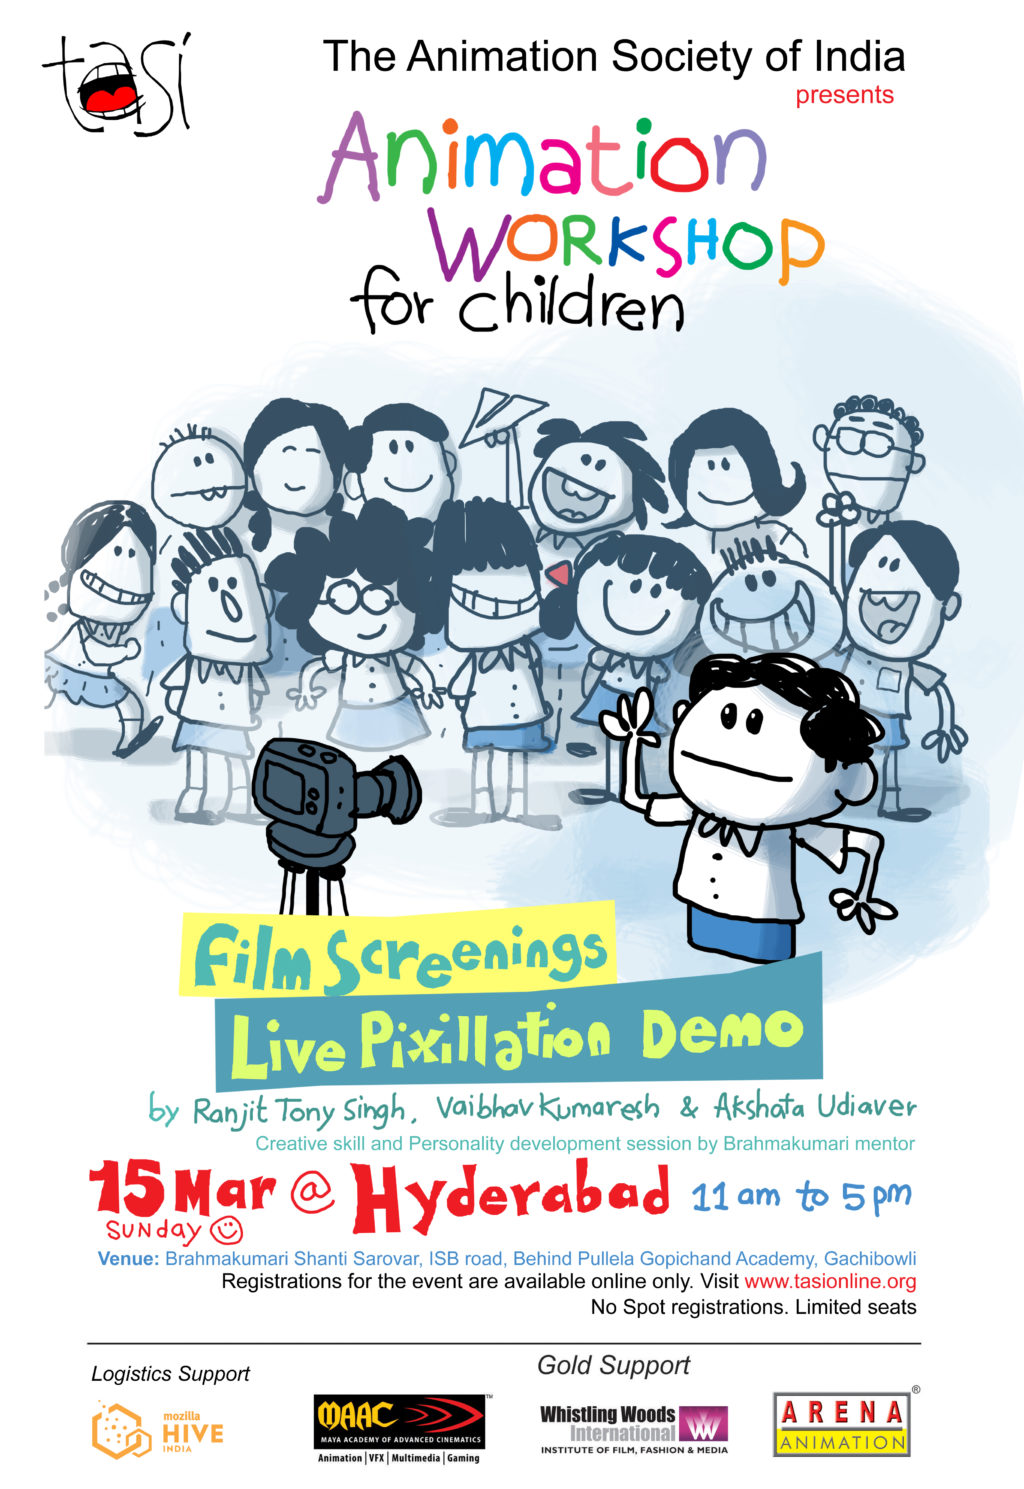 Hyderabad Children's Workshop